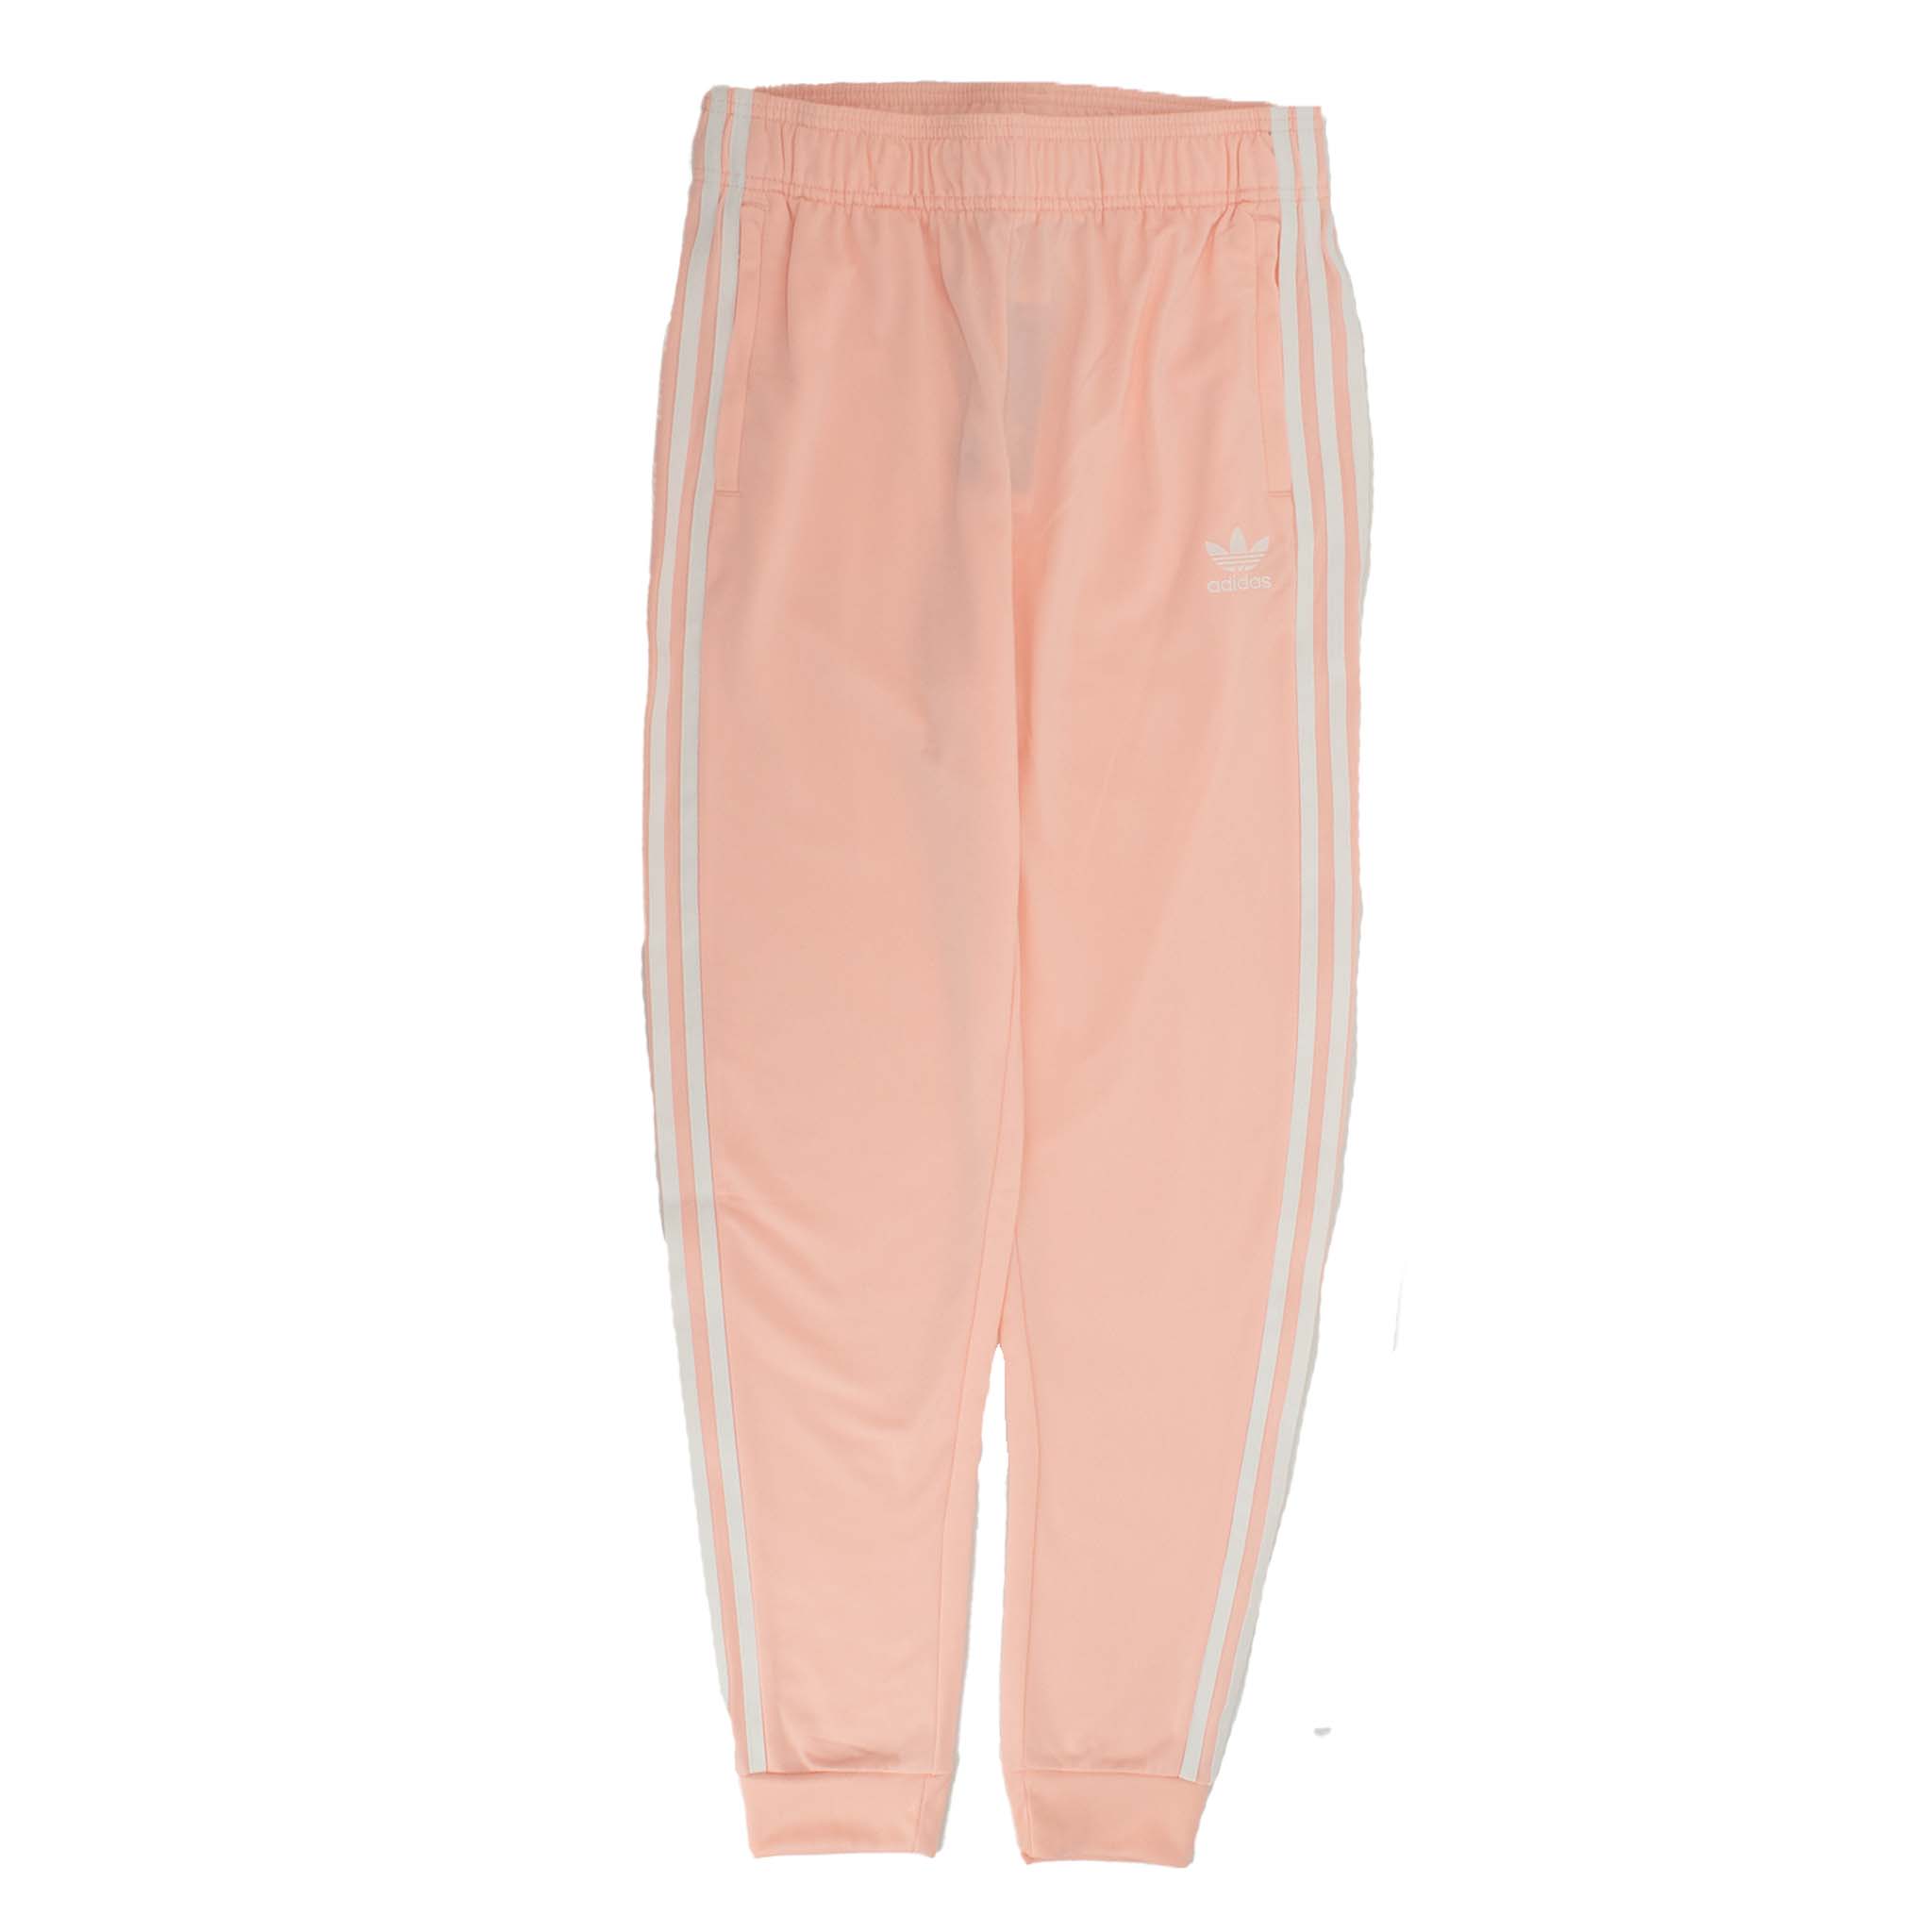 Спортивные брюки adidas Sst Track Pants, розовый брюки adidas originals primeblue sst track pants карманы размер 38 розовый